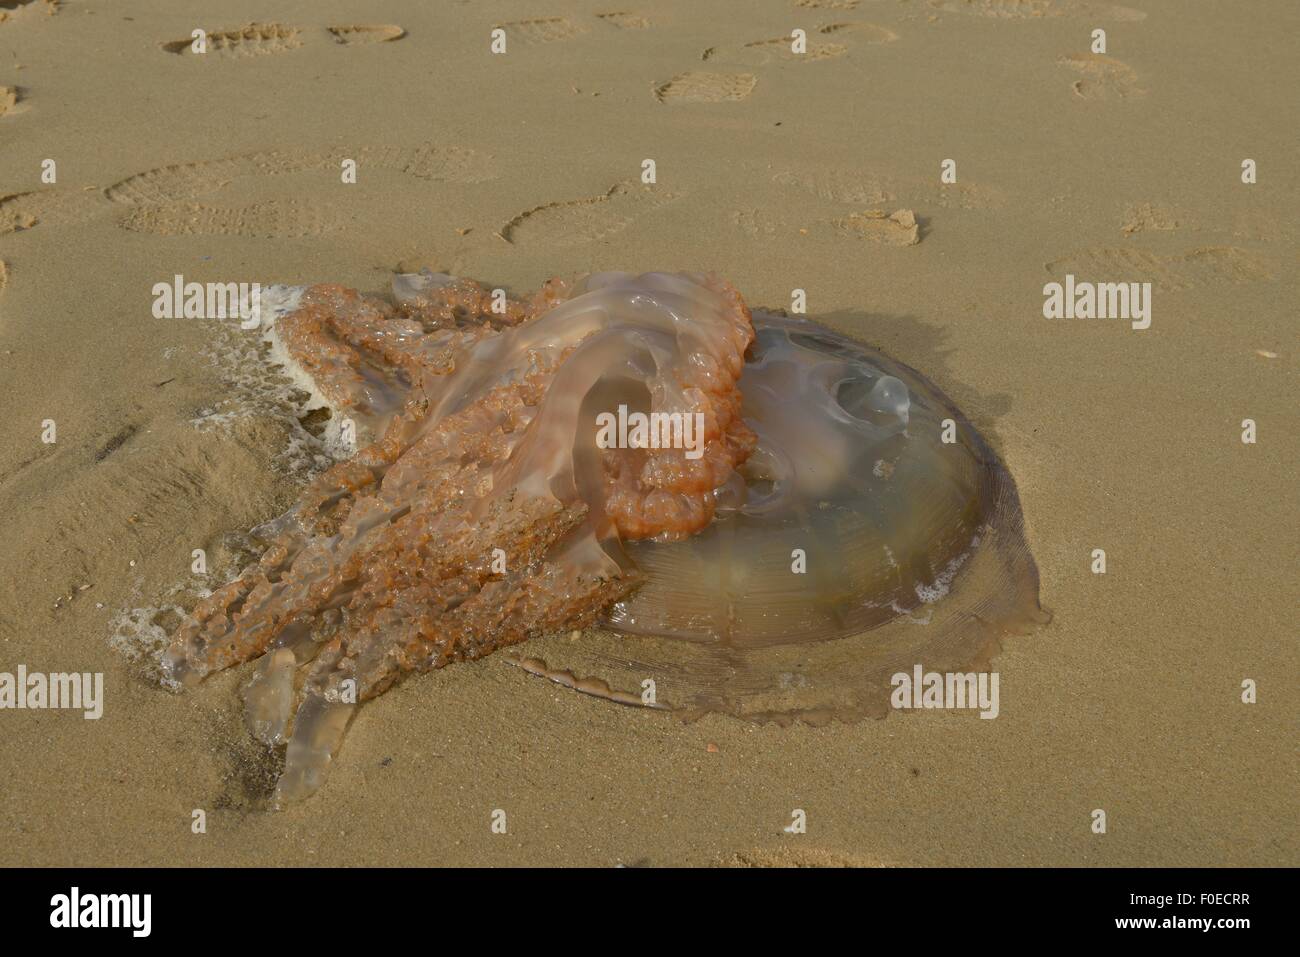 Eine Qualle, Medusozoa, an den Strand gespült. Stockfoto